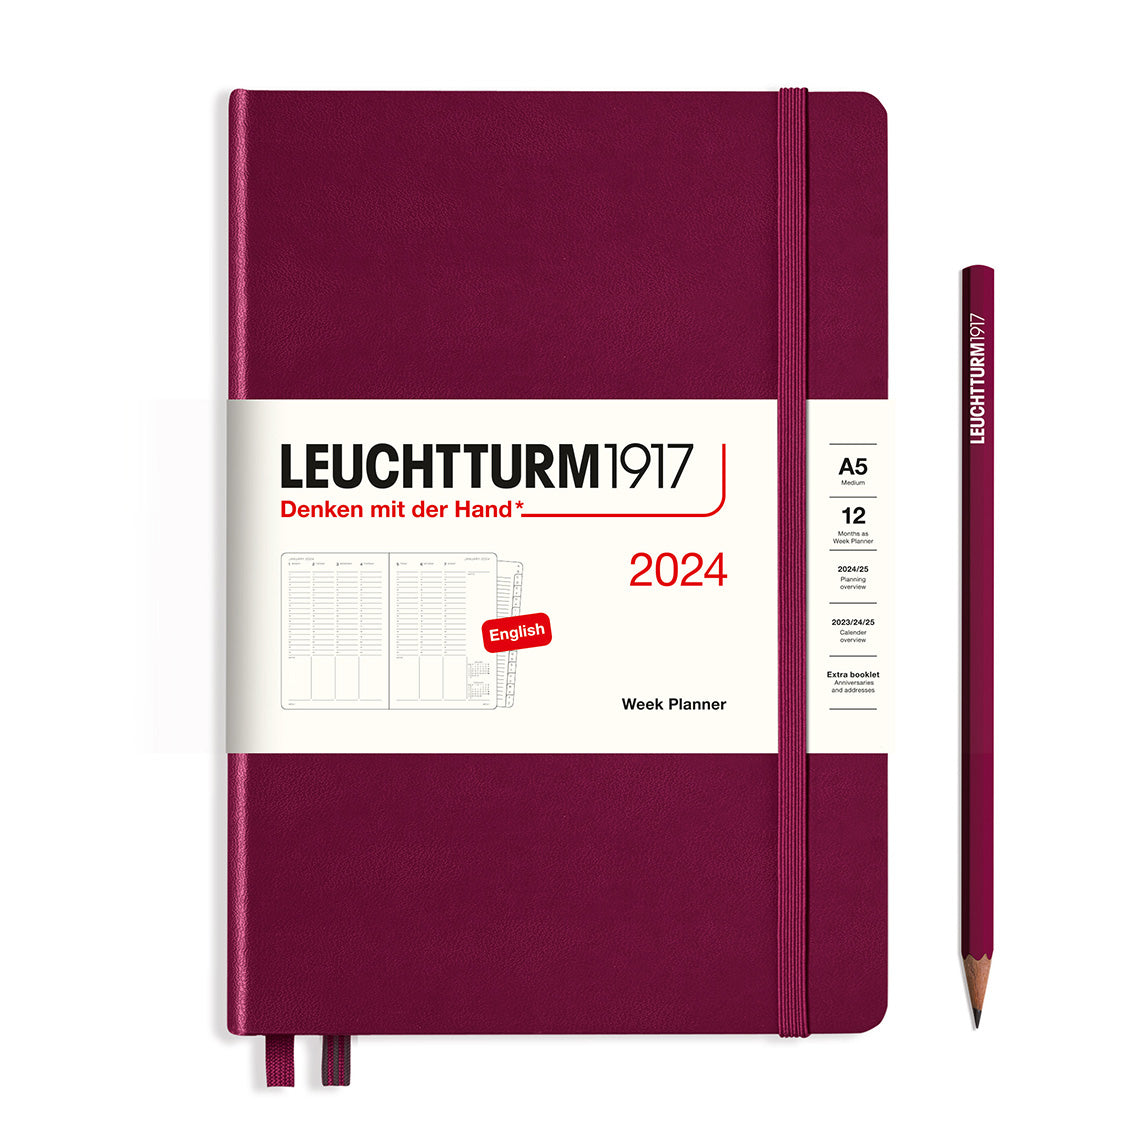 Leuchtturm Week Planner - Medium (A5) 5 3/4" x 8 1/4"